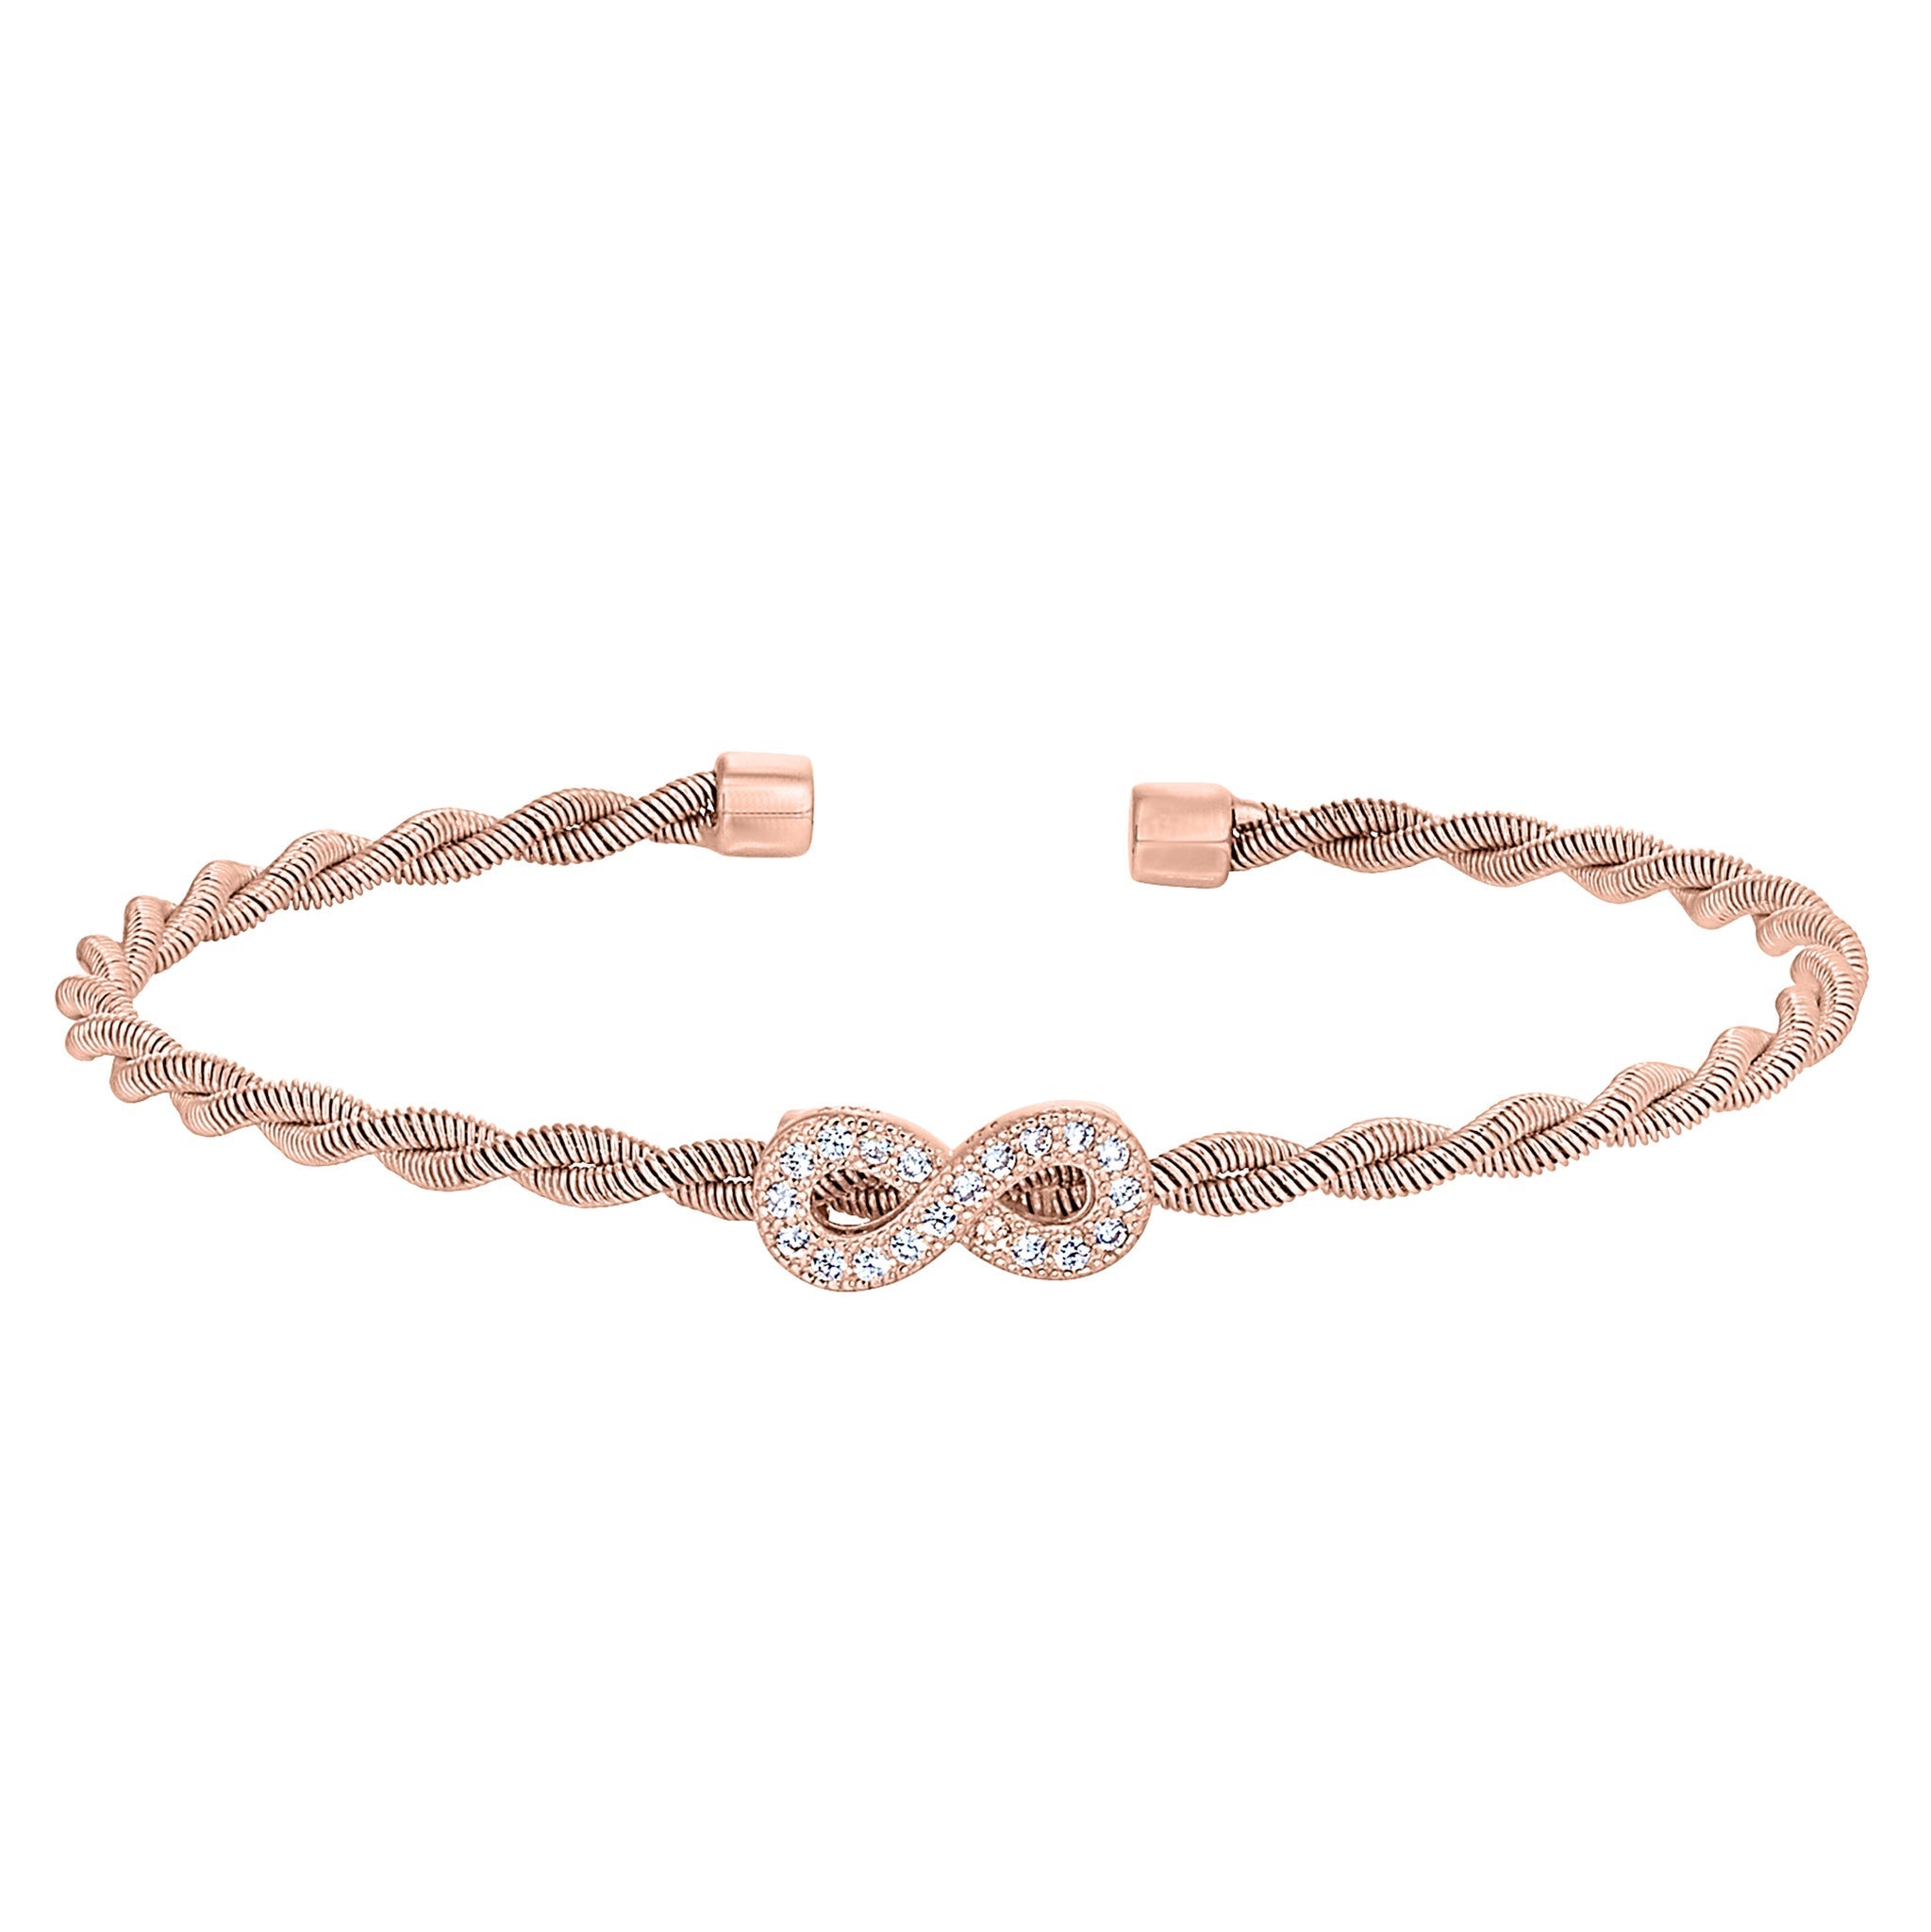 Diamond studded stylish Bracelet for Women – www.soosi.co.in